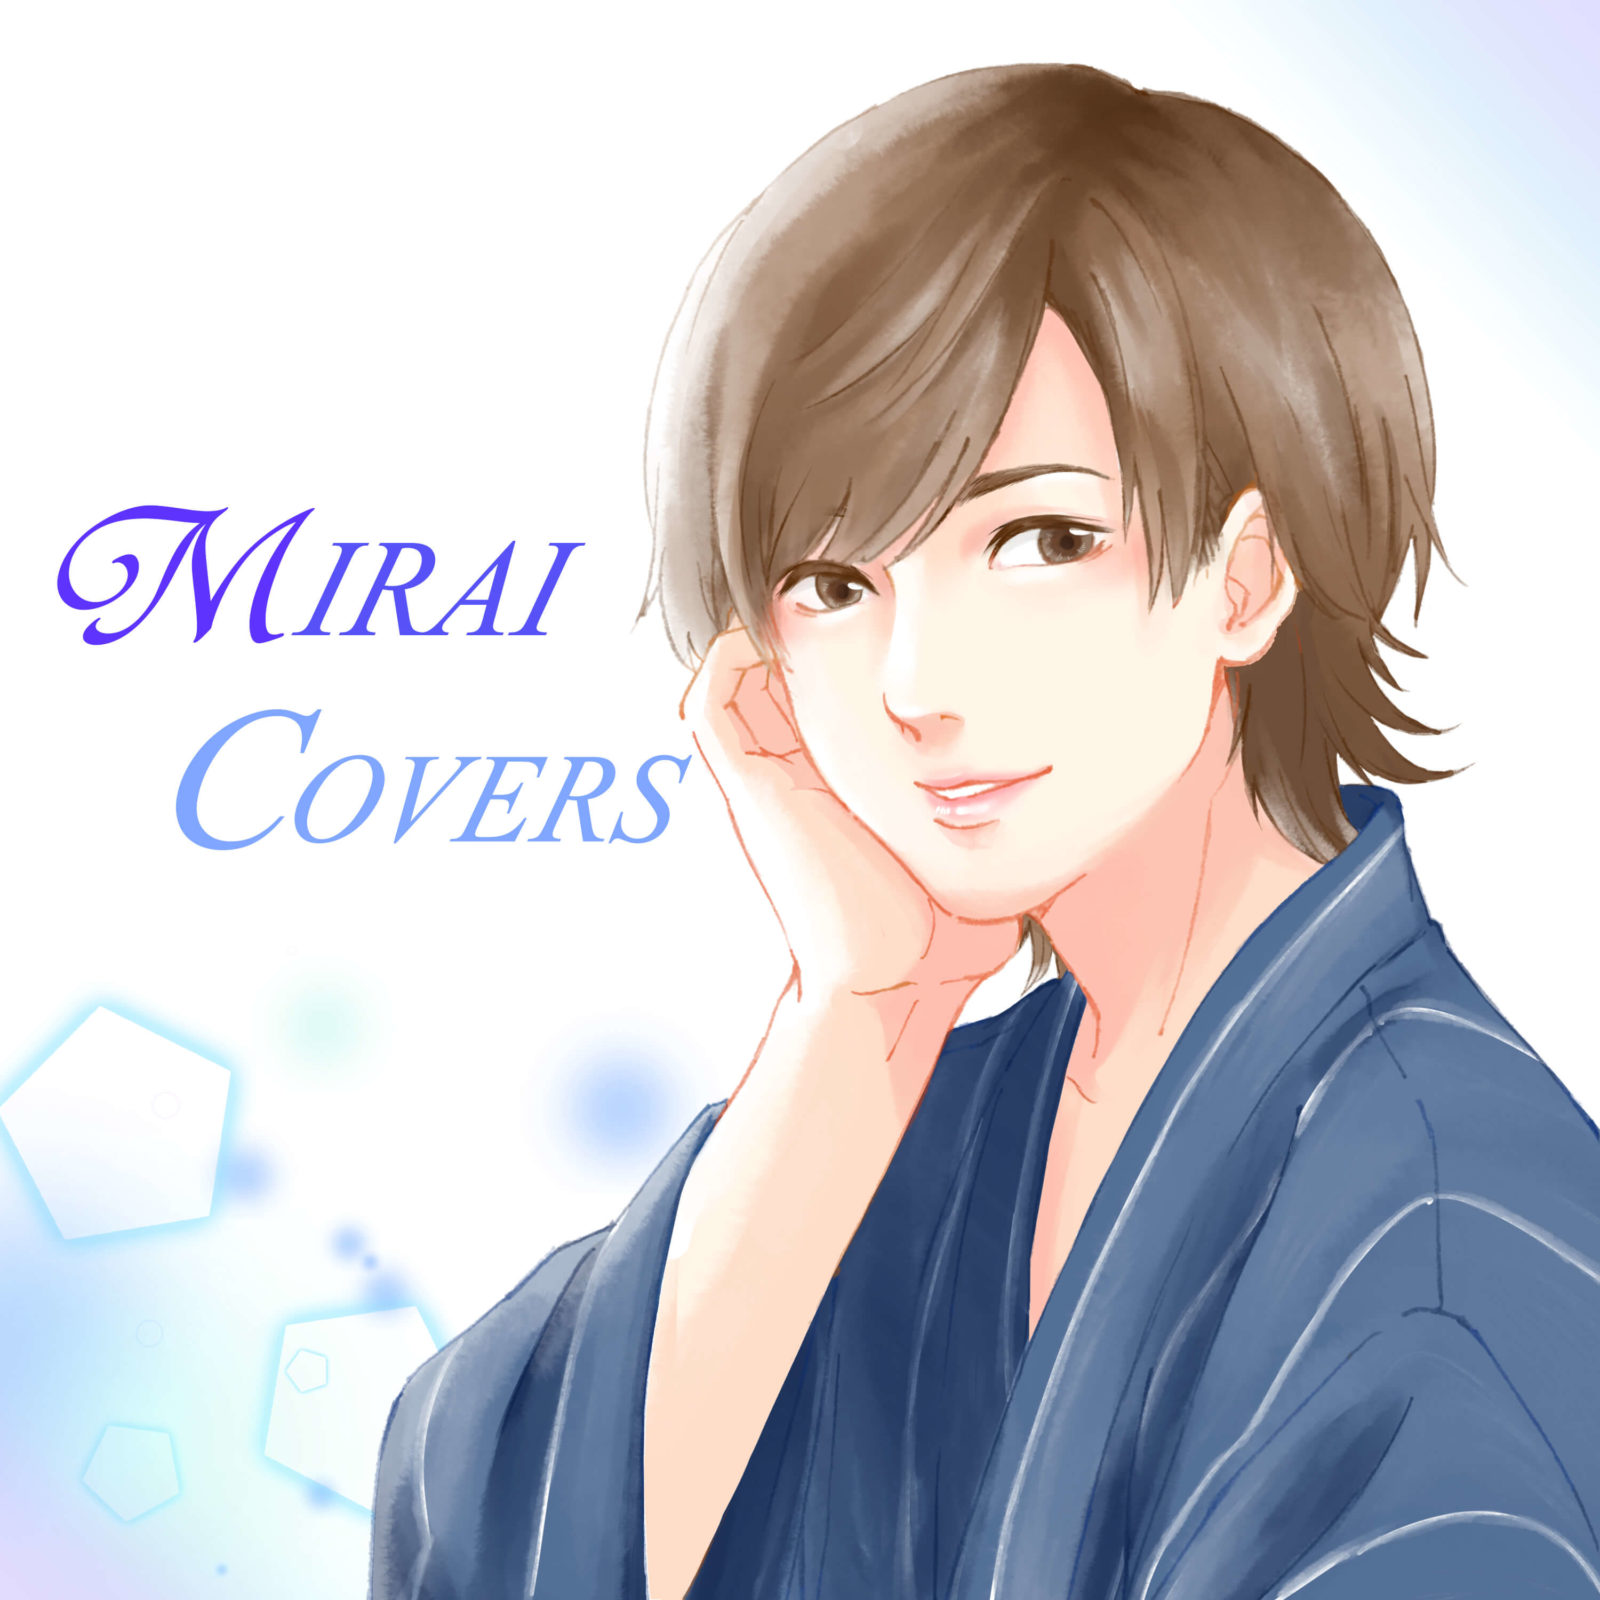 人気音楽YouTuber・Kobasoloと“イケボ”未来(ザ・フーパーズ)の強力タッグが1stEP「MIRAI COVERS」を語るサムネイル画像!